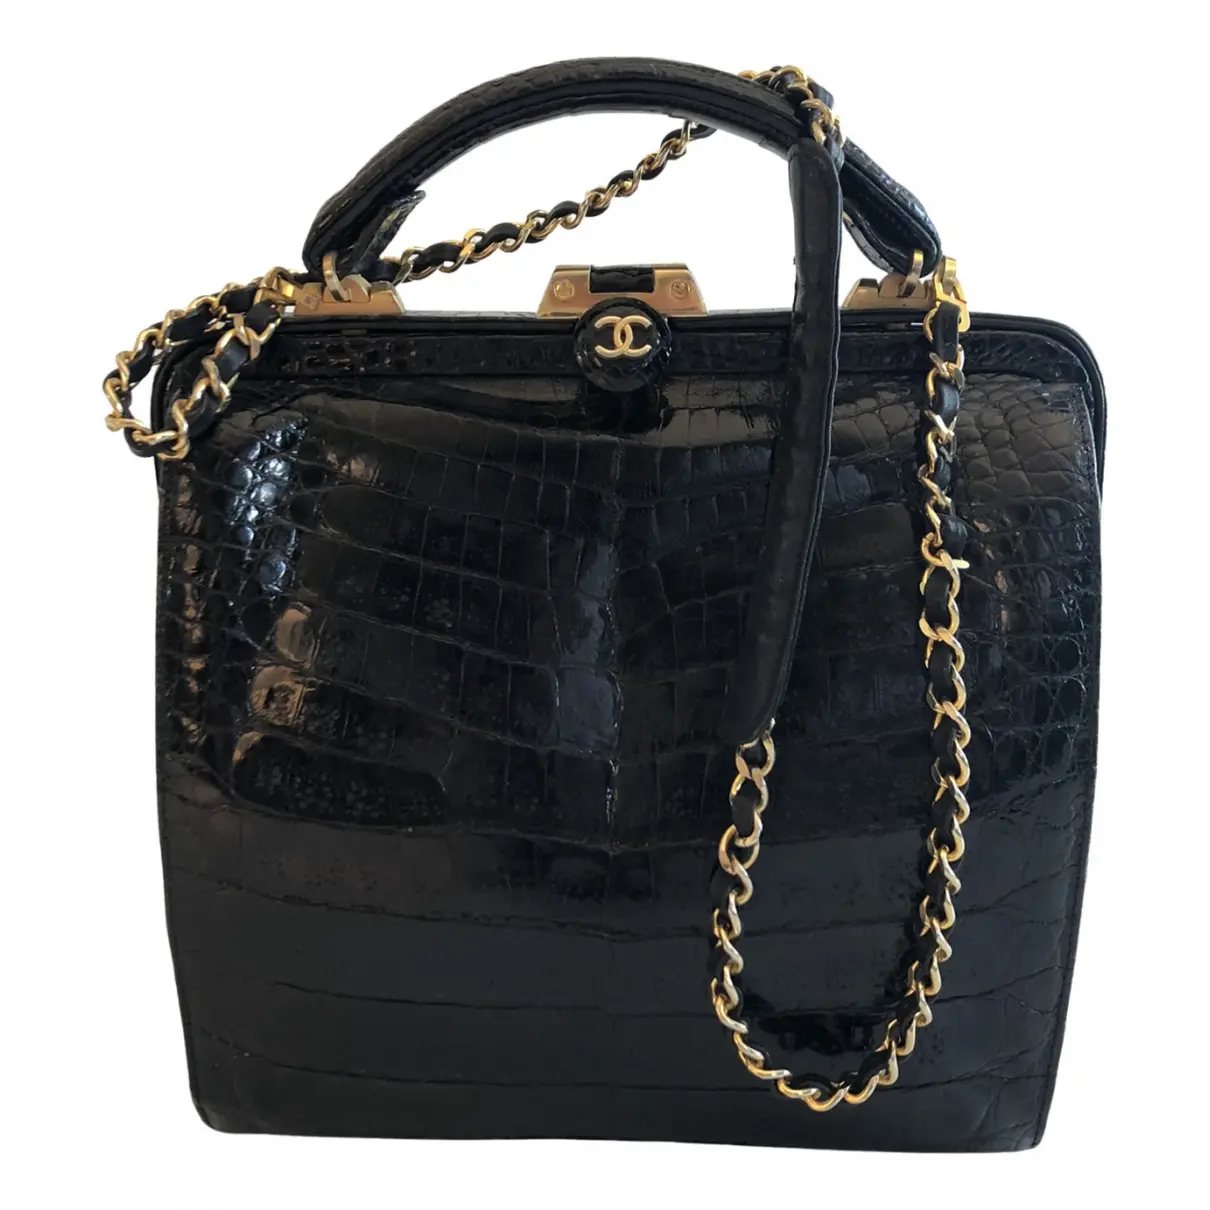 Crocodile handbag Chanel - Vintage